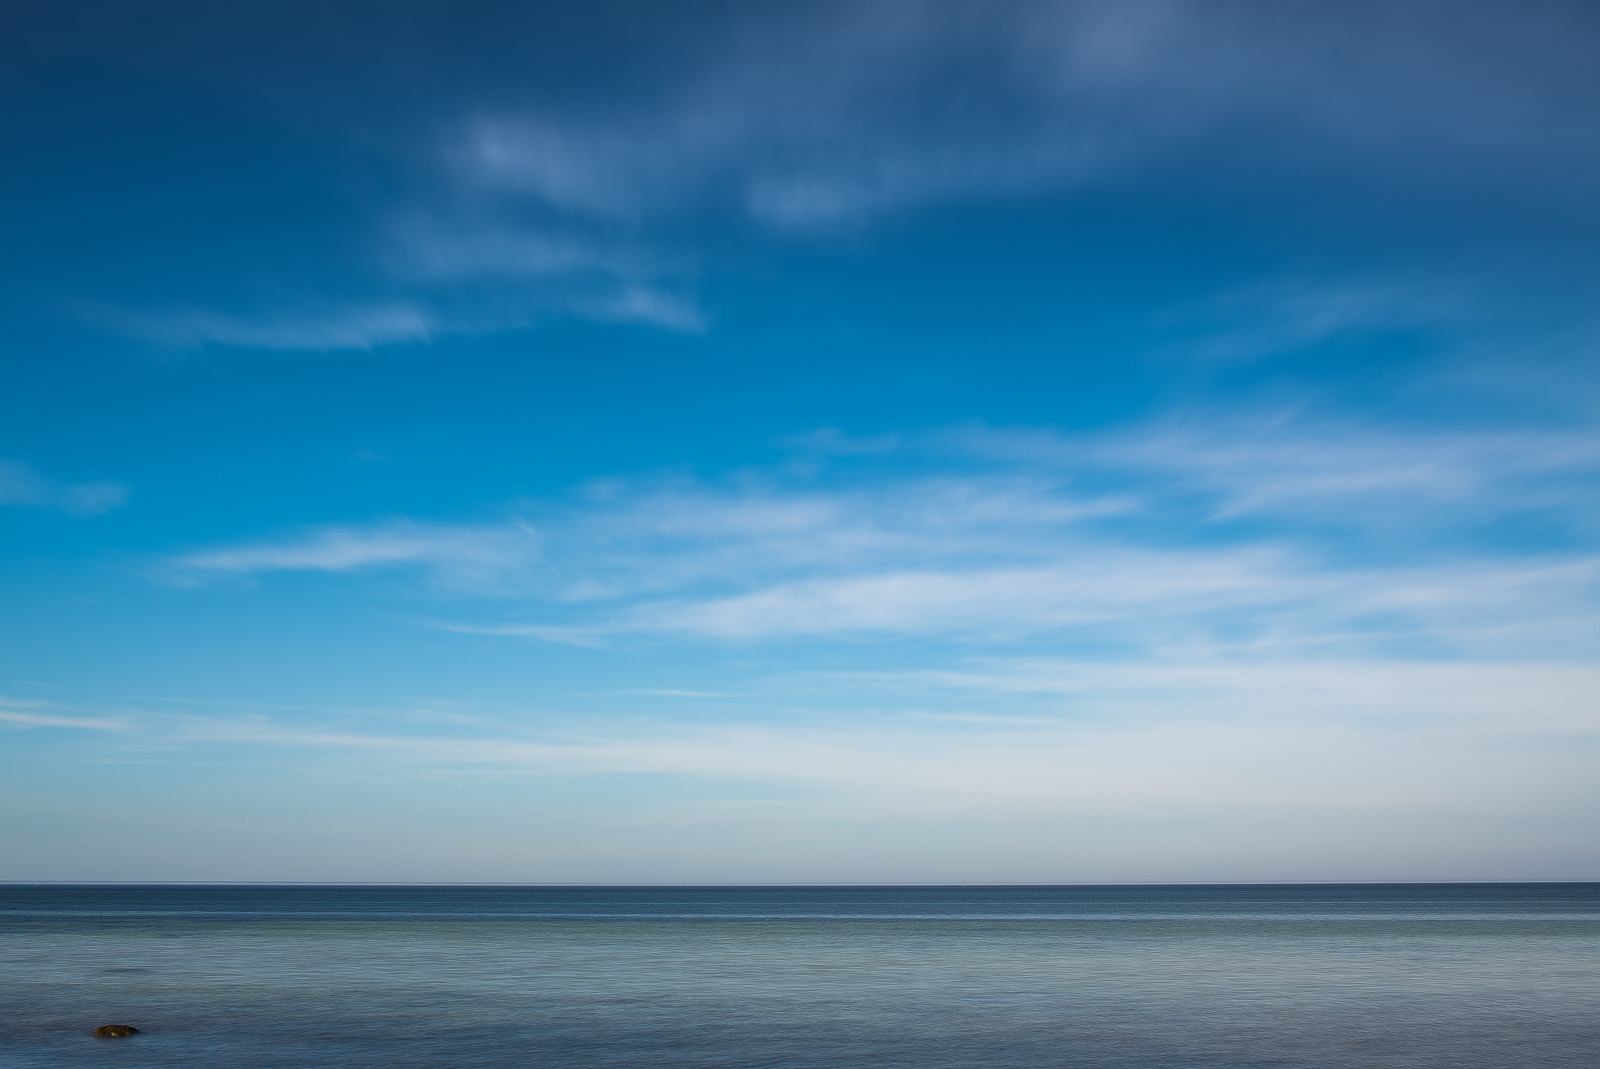 Das Meer unter tief blauem Wolkenhimmel. Der Horizont liegt sehr nah dem unteren Bildrand, ganz links unten unterbricht ein einzelner kleiner Felsen die ansonsten glatte Wasseroberfläche